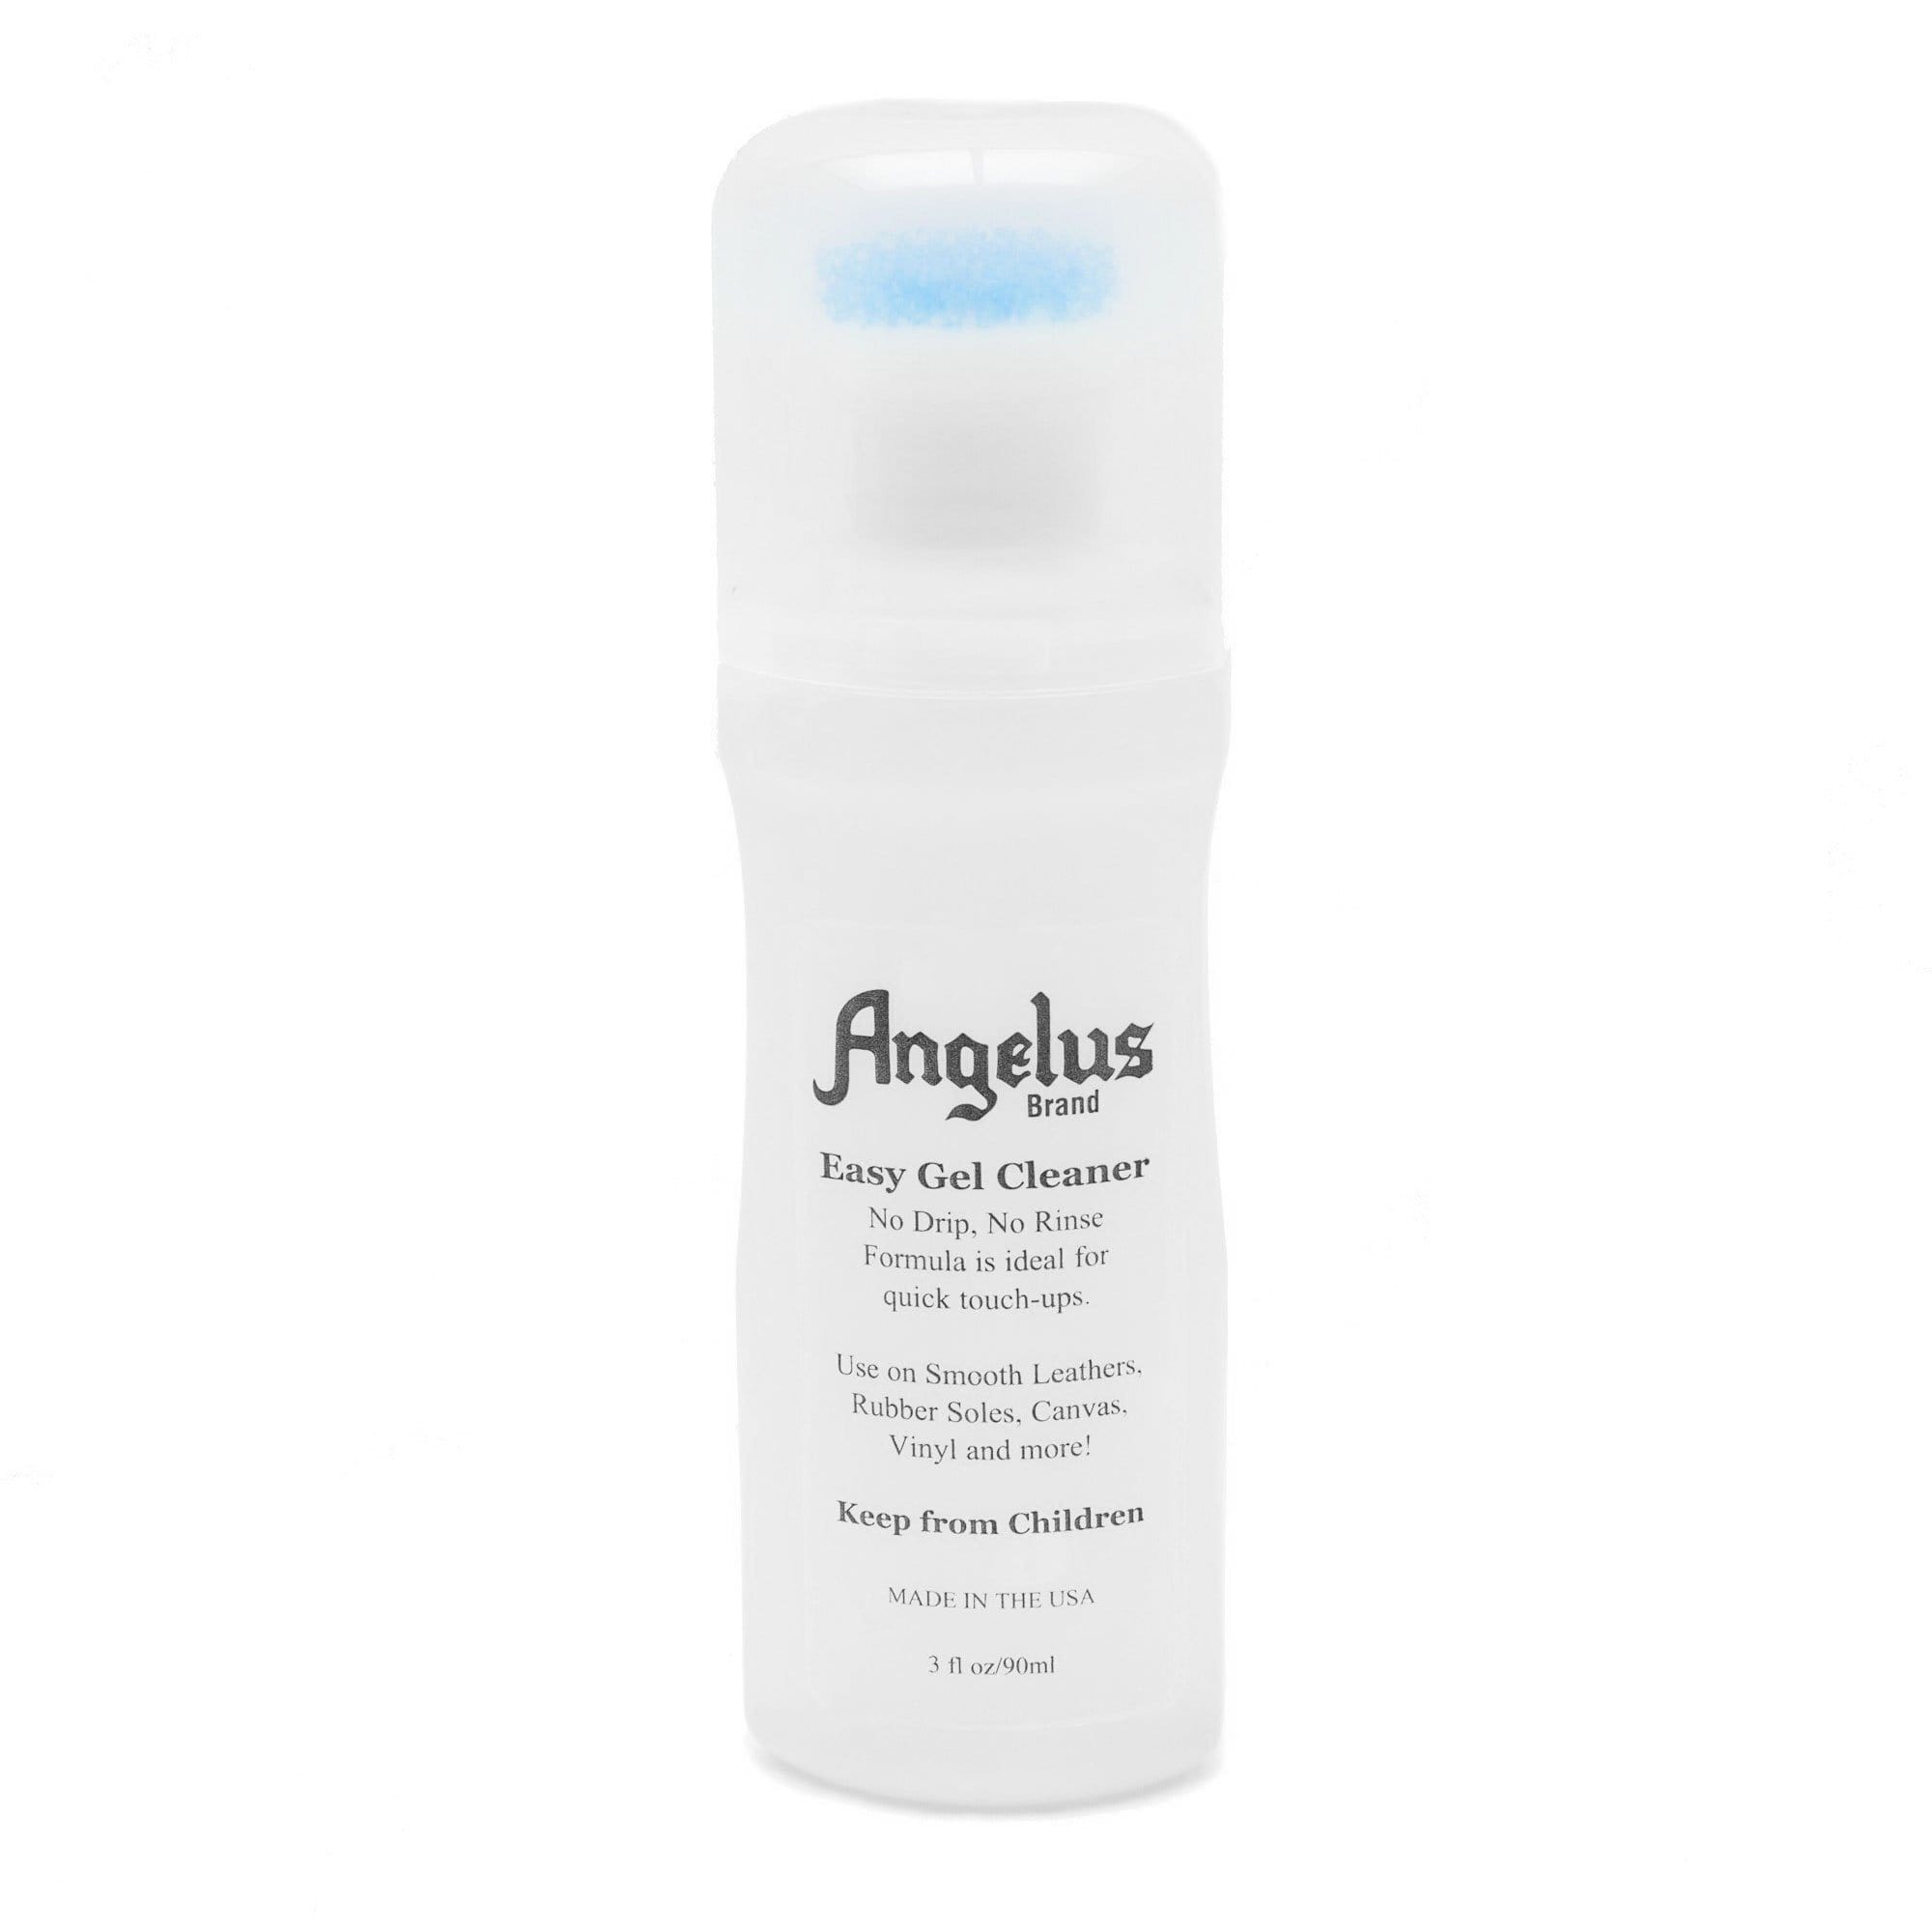 Angelus® Easy Cleaner Kit